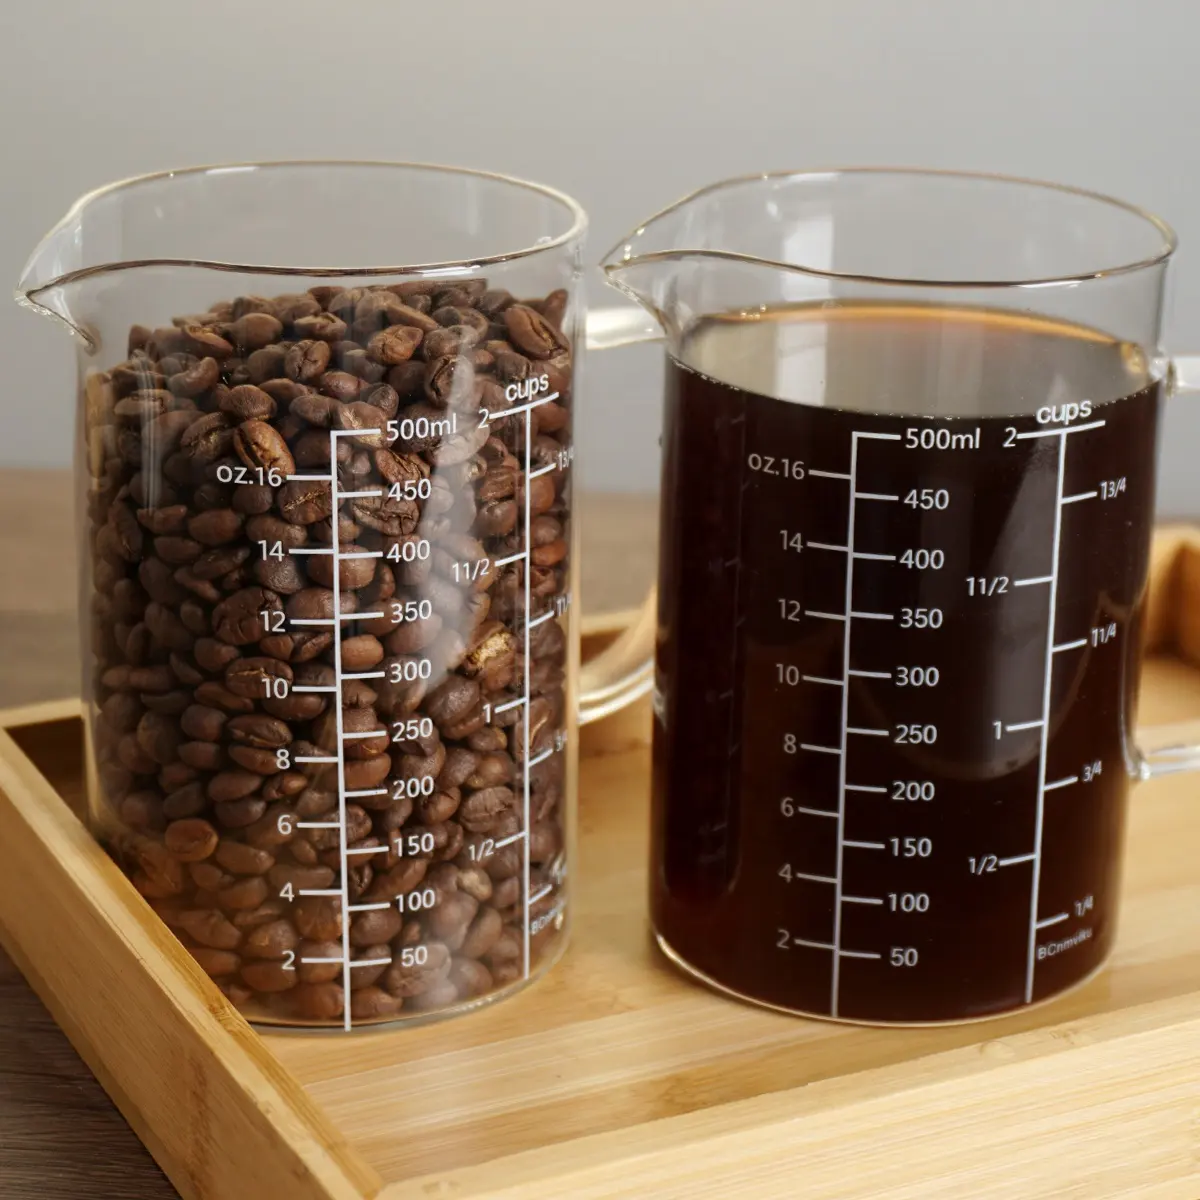 BCnmviku 500ML/17oz 계량컵 다목적 절연 계량유리 바리스타 커피 계량도구 V 자형 싱글 스파우트